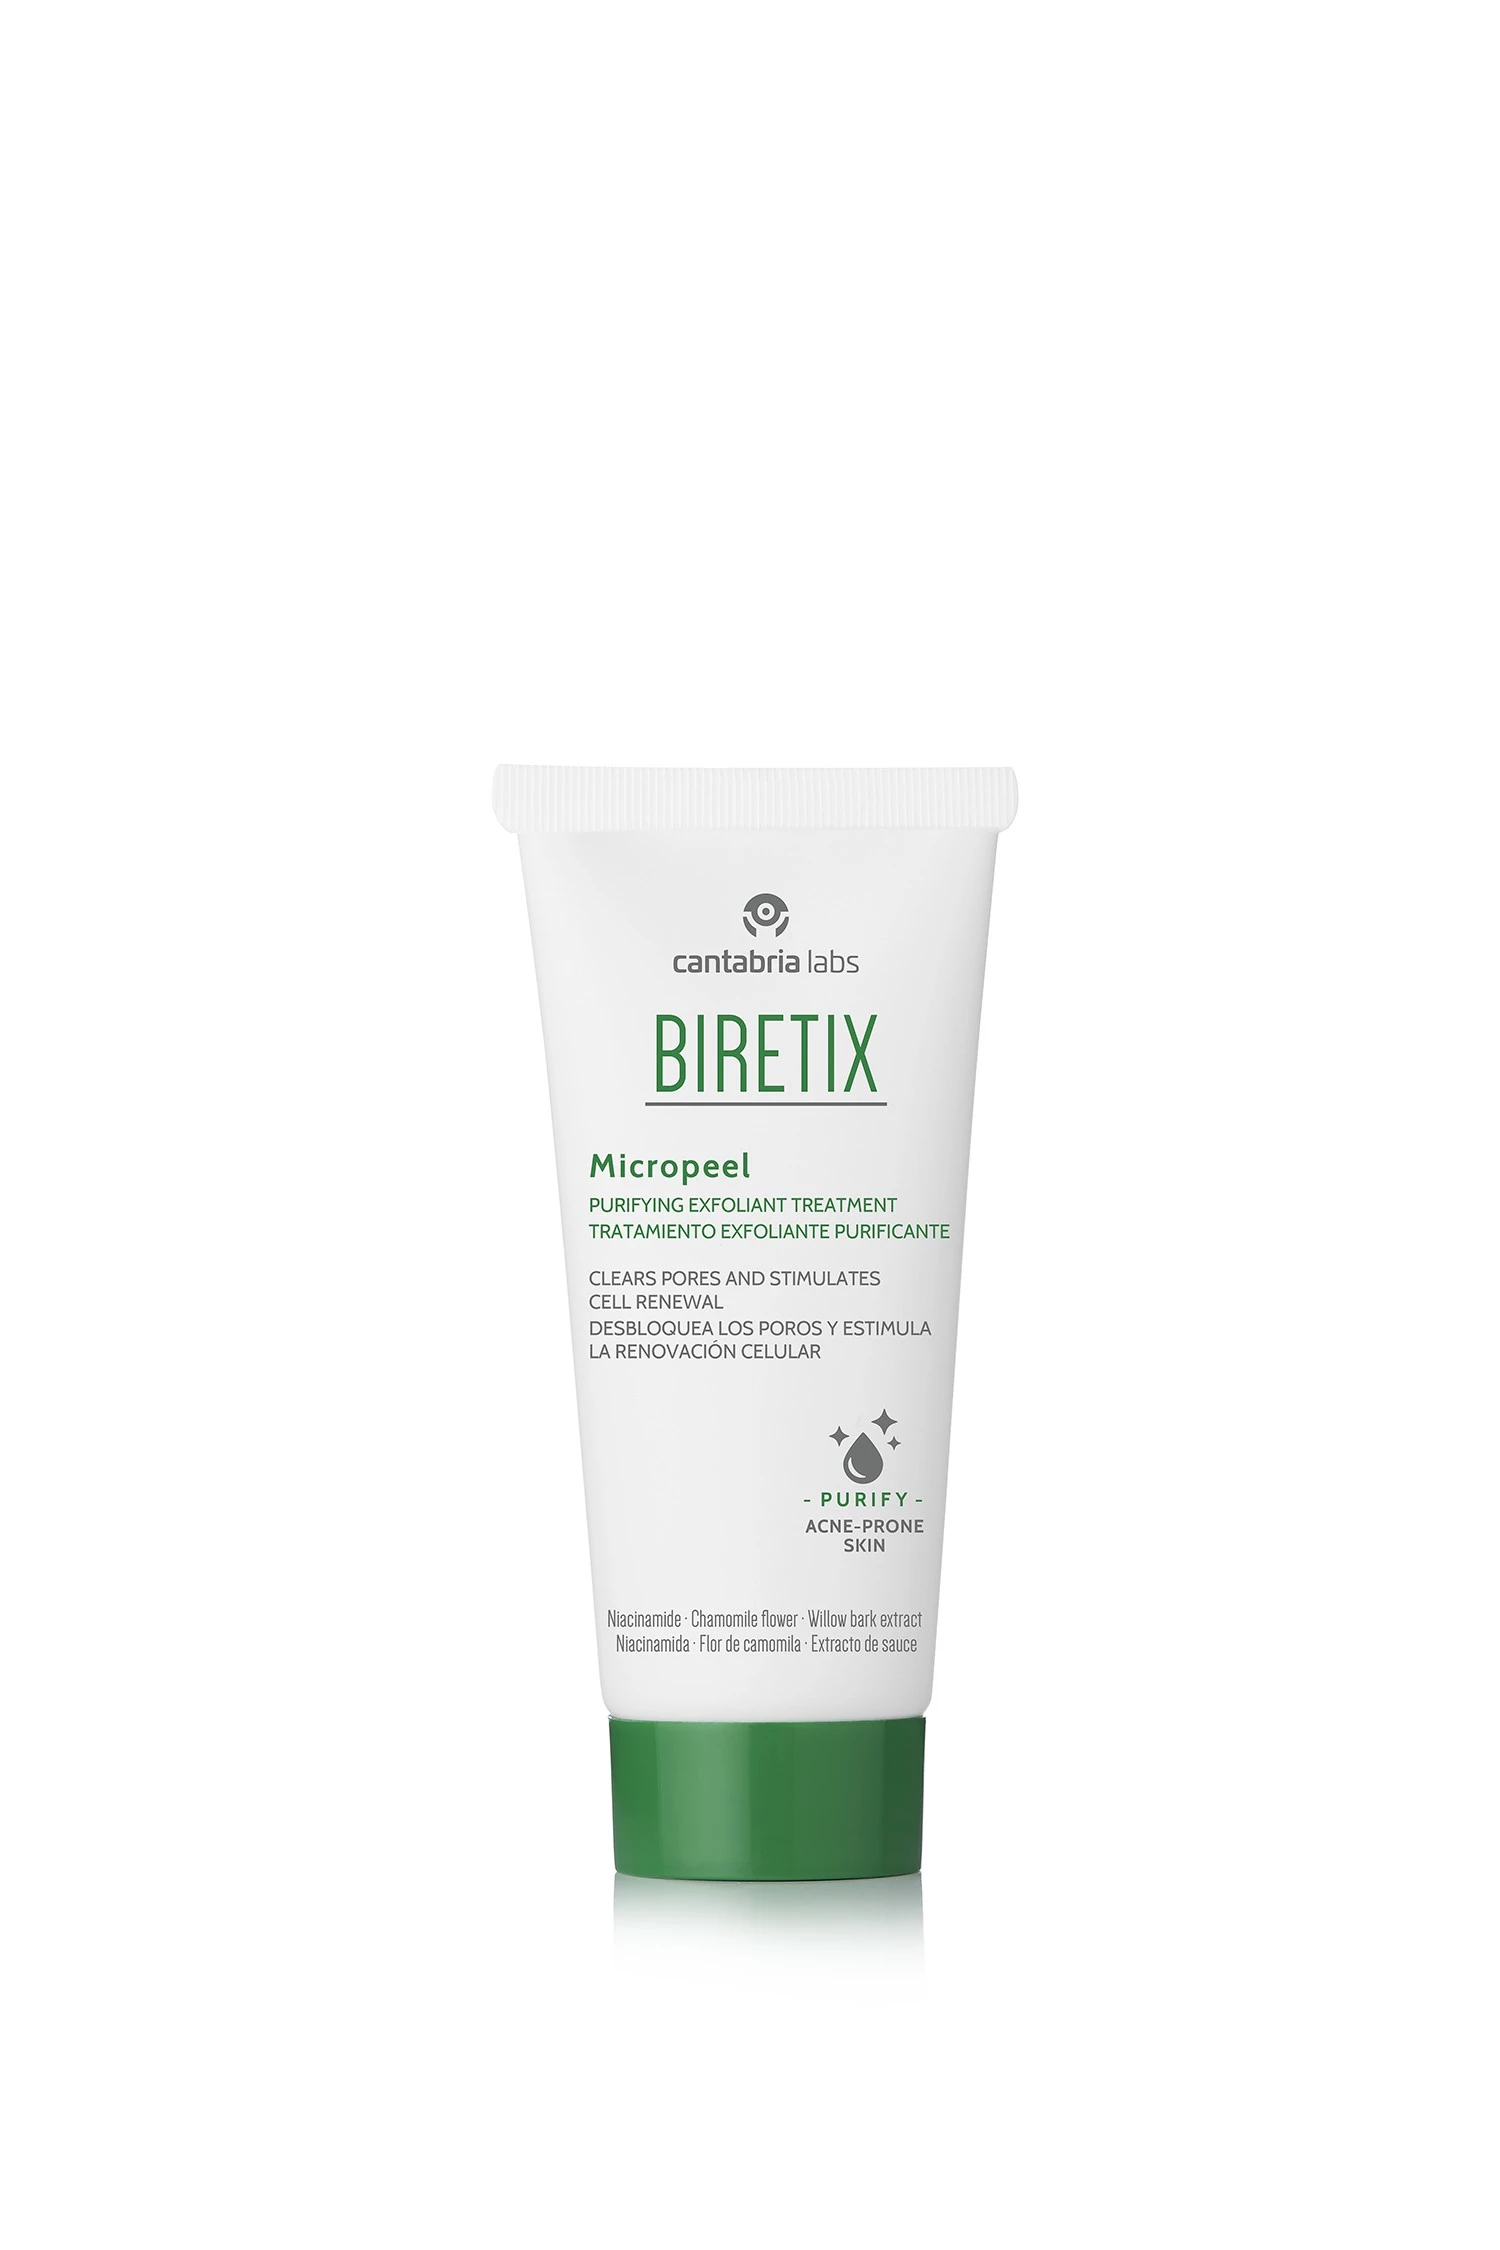 Biretix Micropeel Exfoliante Purificante, 50ml | Farmacia Barata